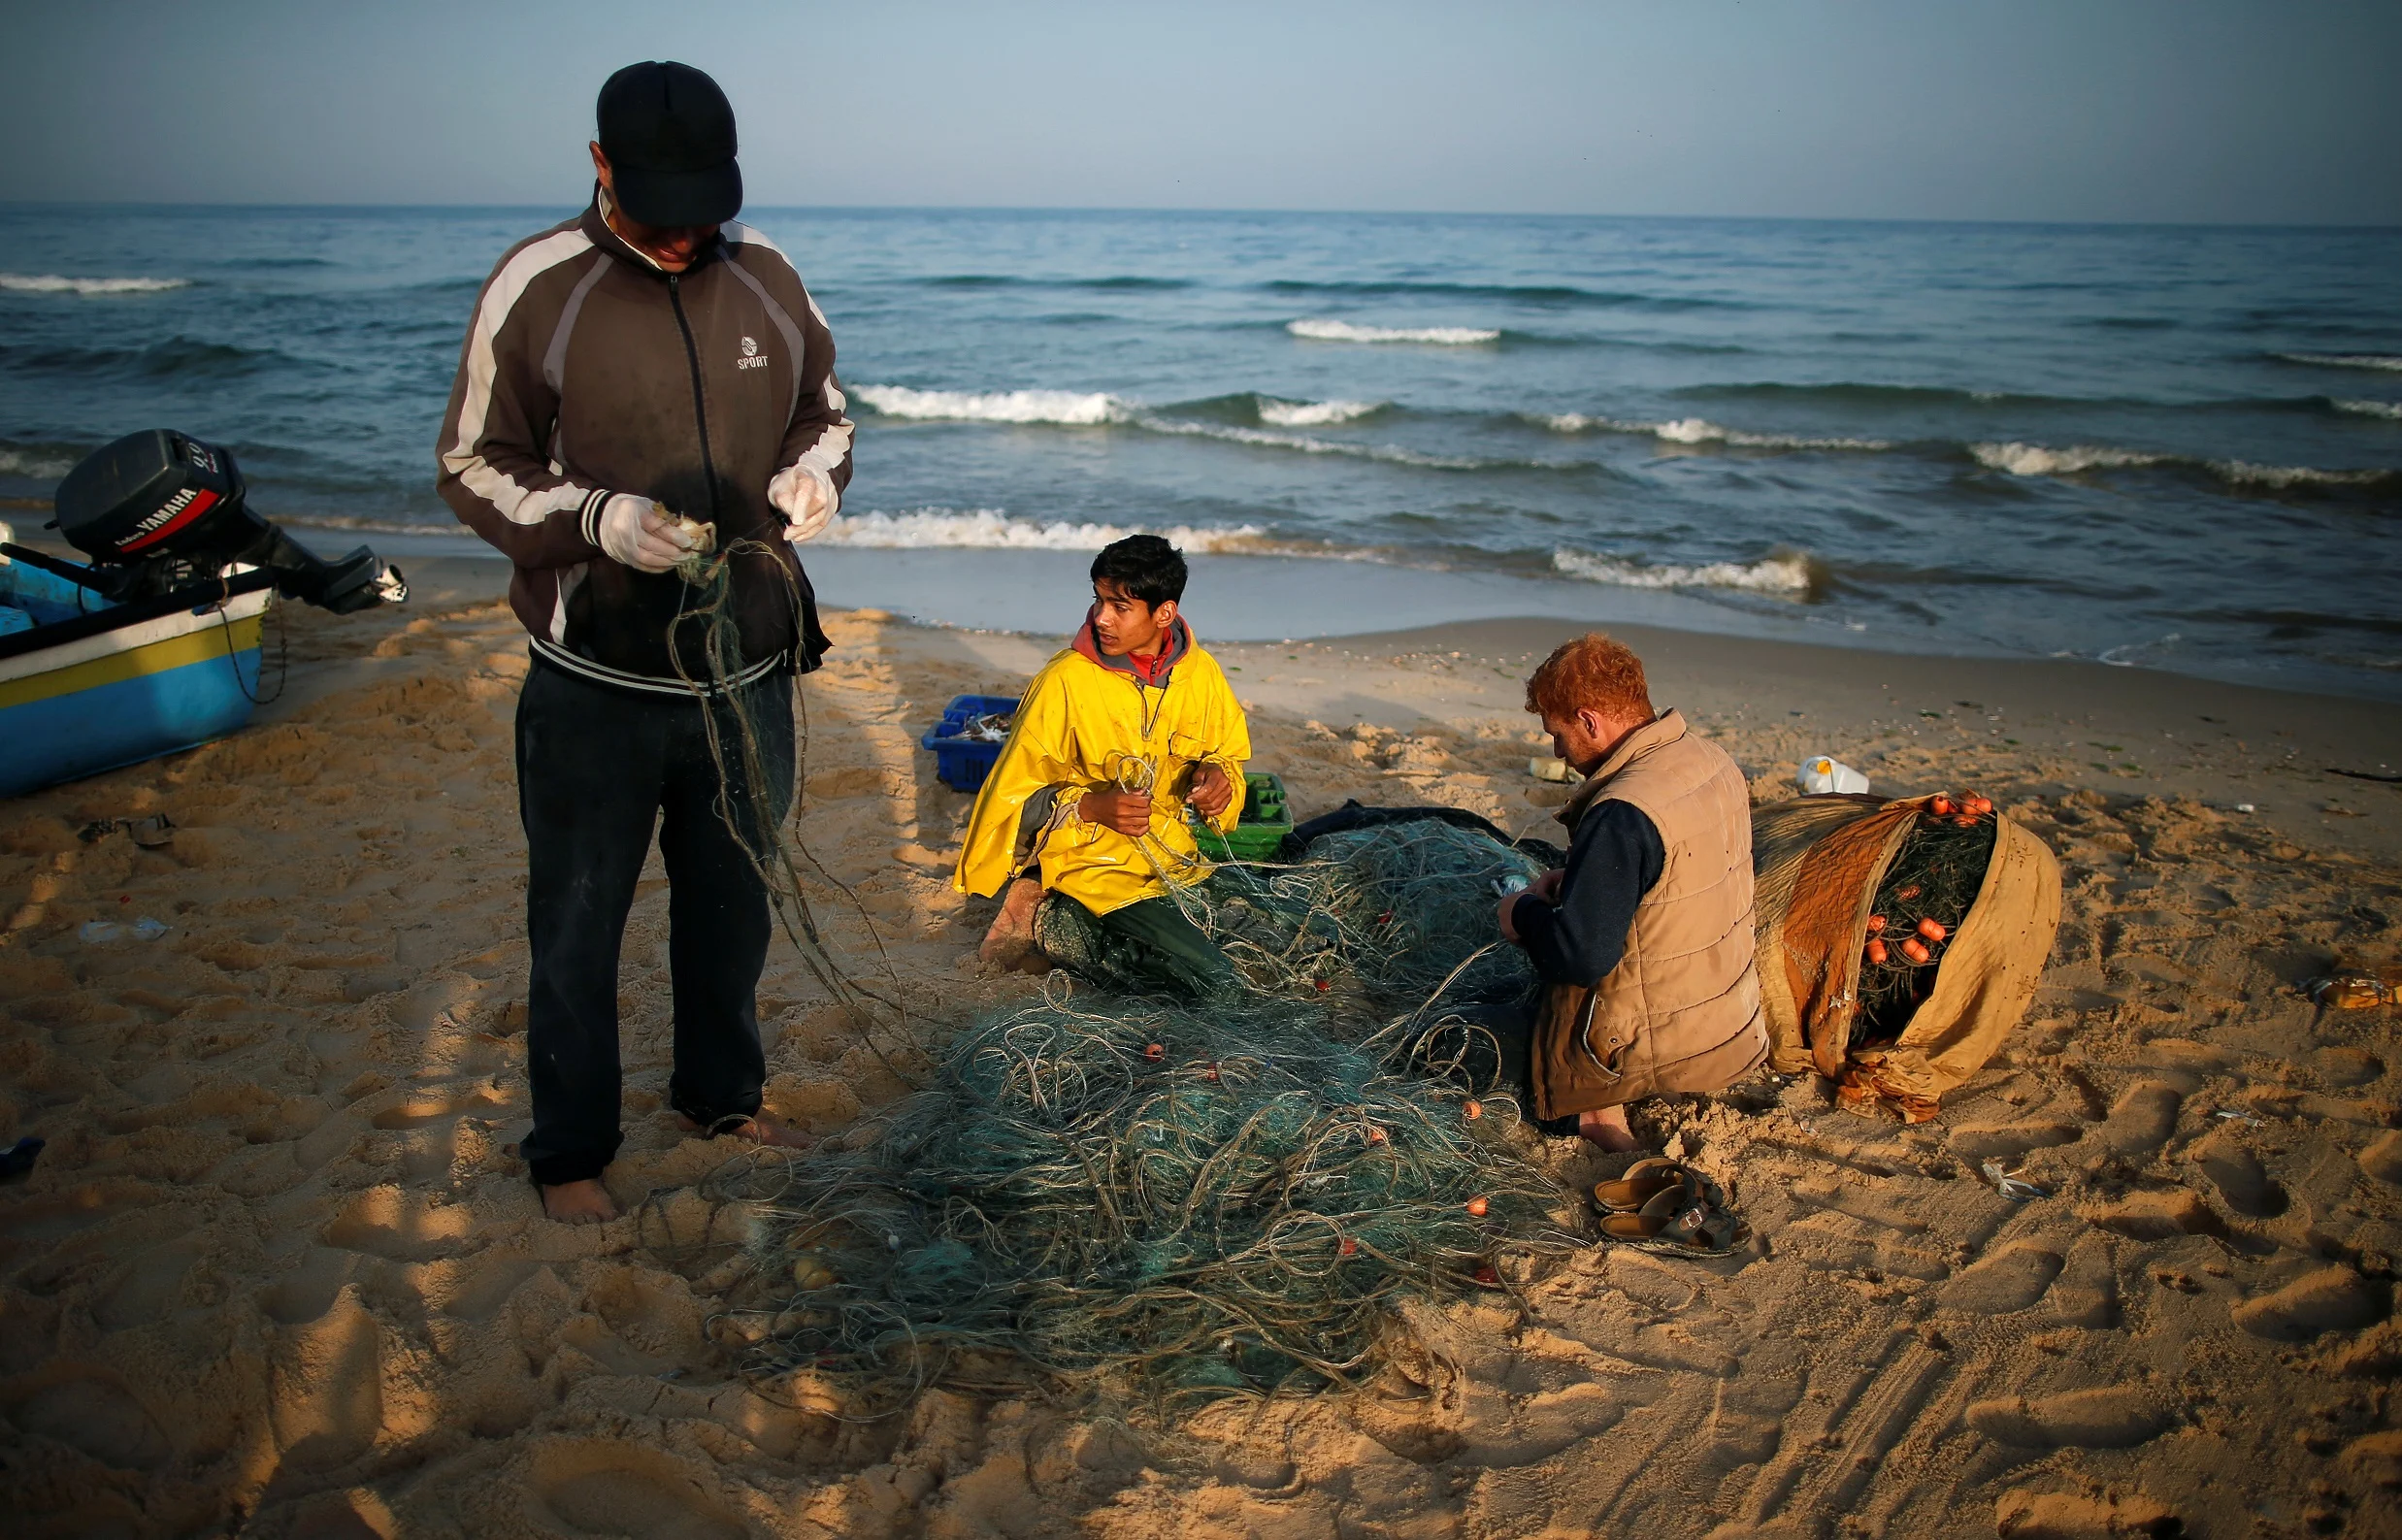 דייגים בחוף ברצועת עזה